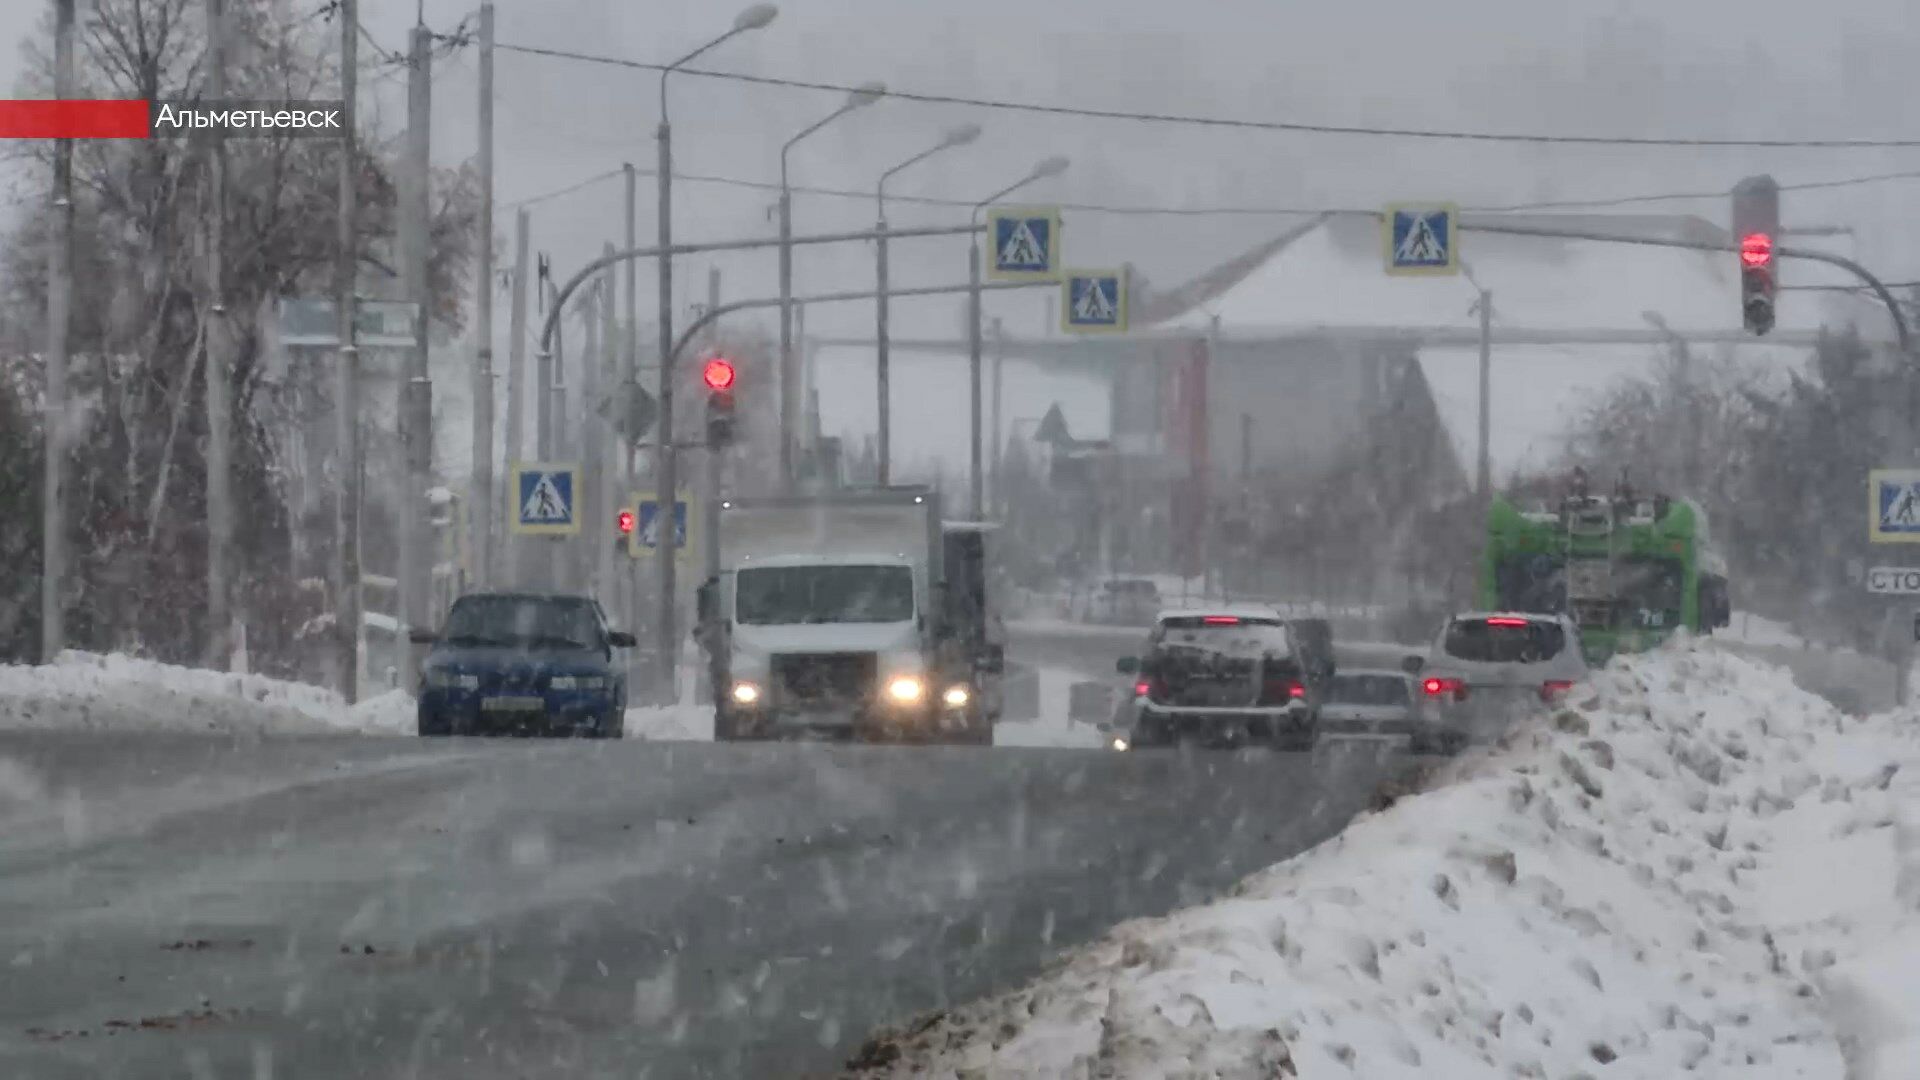 Татарстан накрыл сильный снегопад: водителям и пешеходам напоминают о безопасности на дорогах